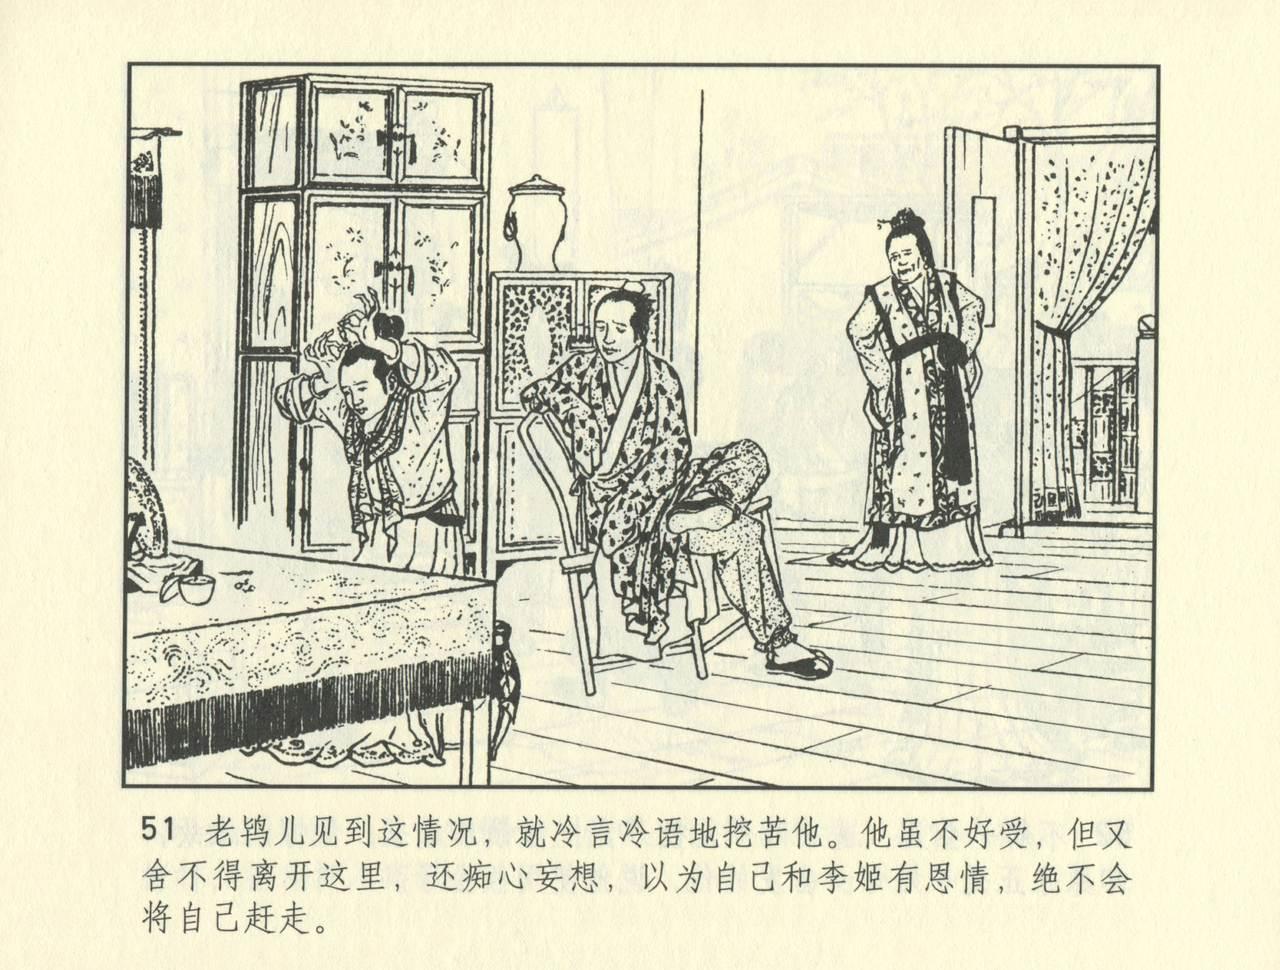 聊斋志异 张玮等绘 天津人民美术出版社 卷二十一 ~ 三十 523